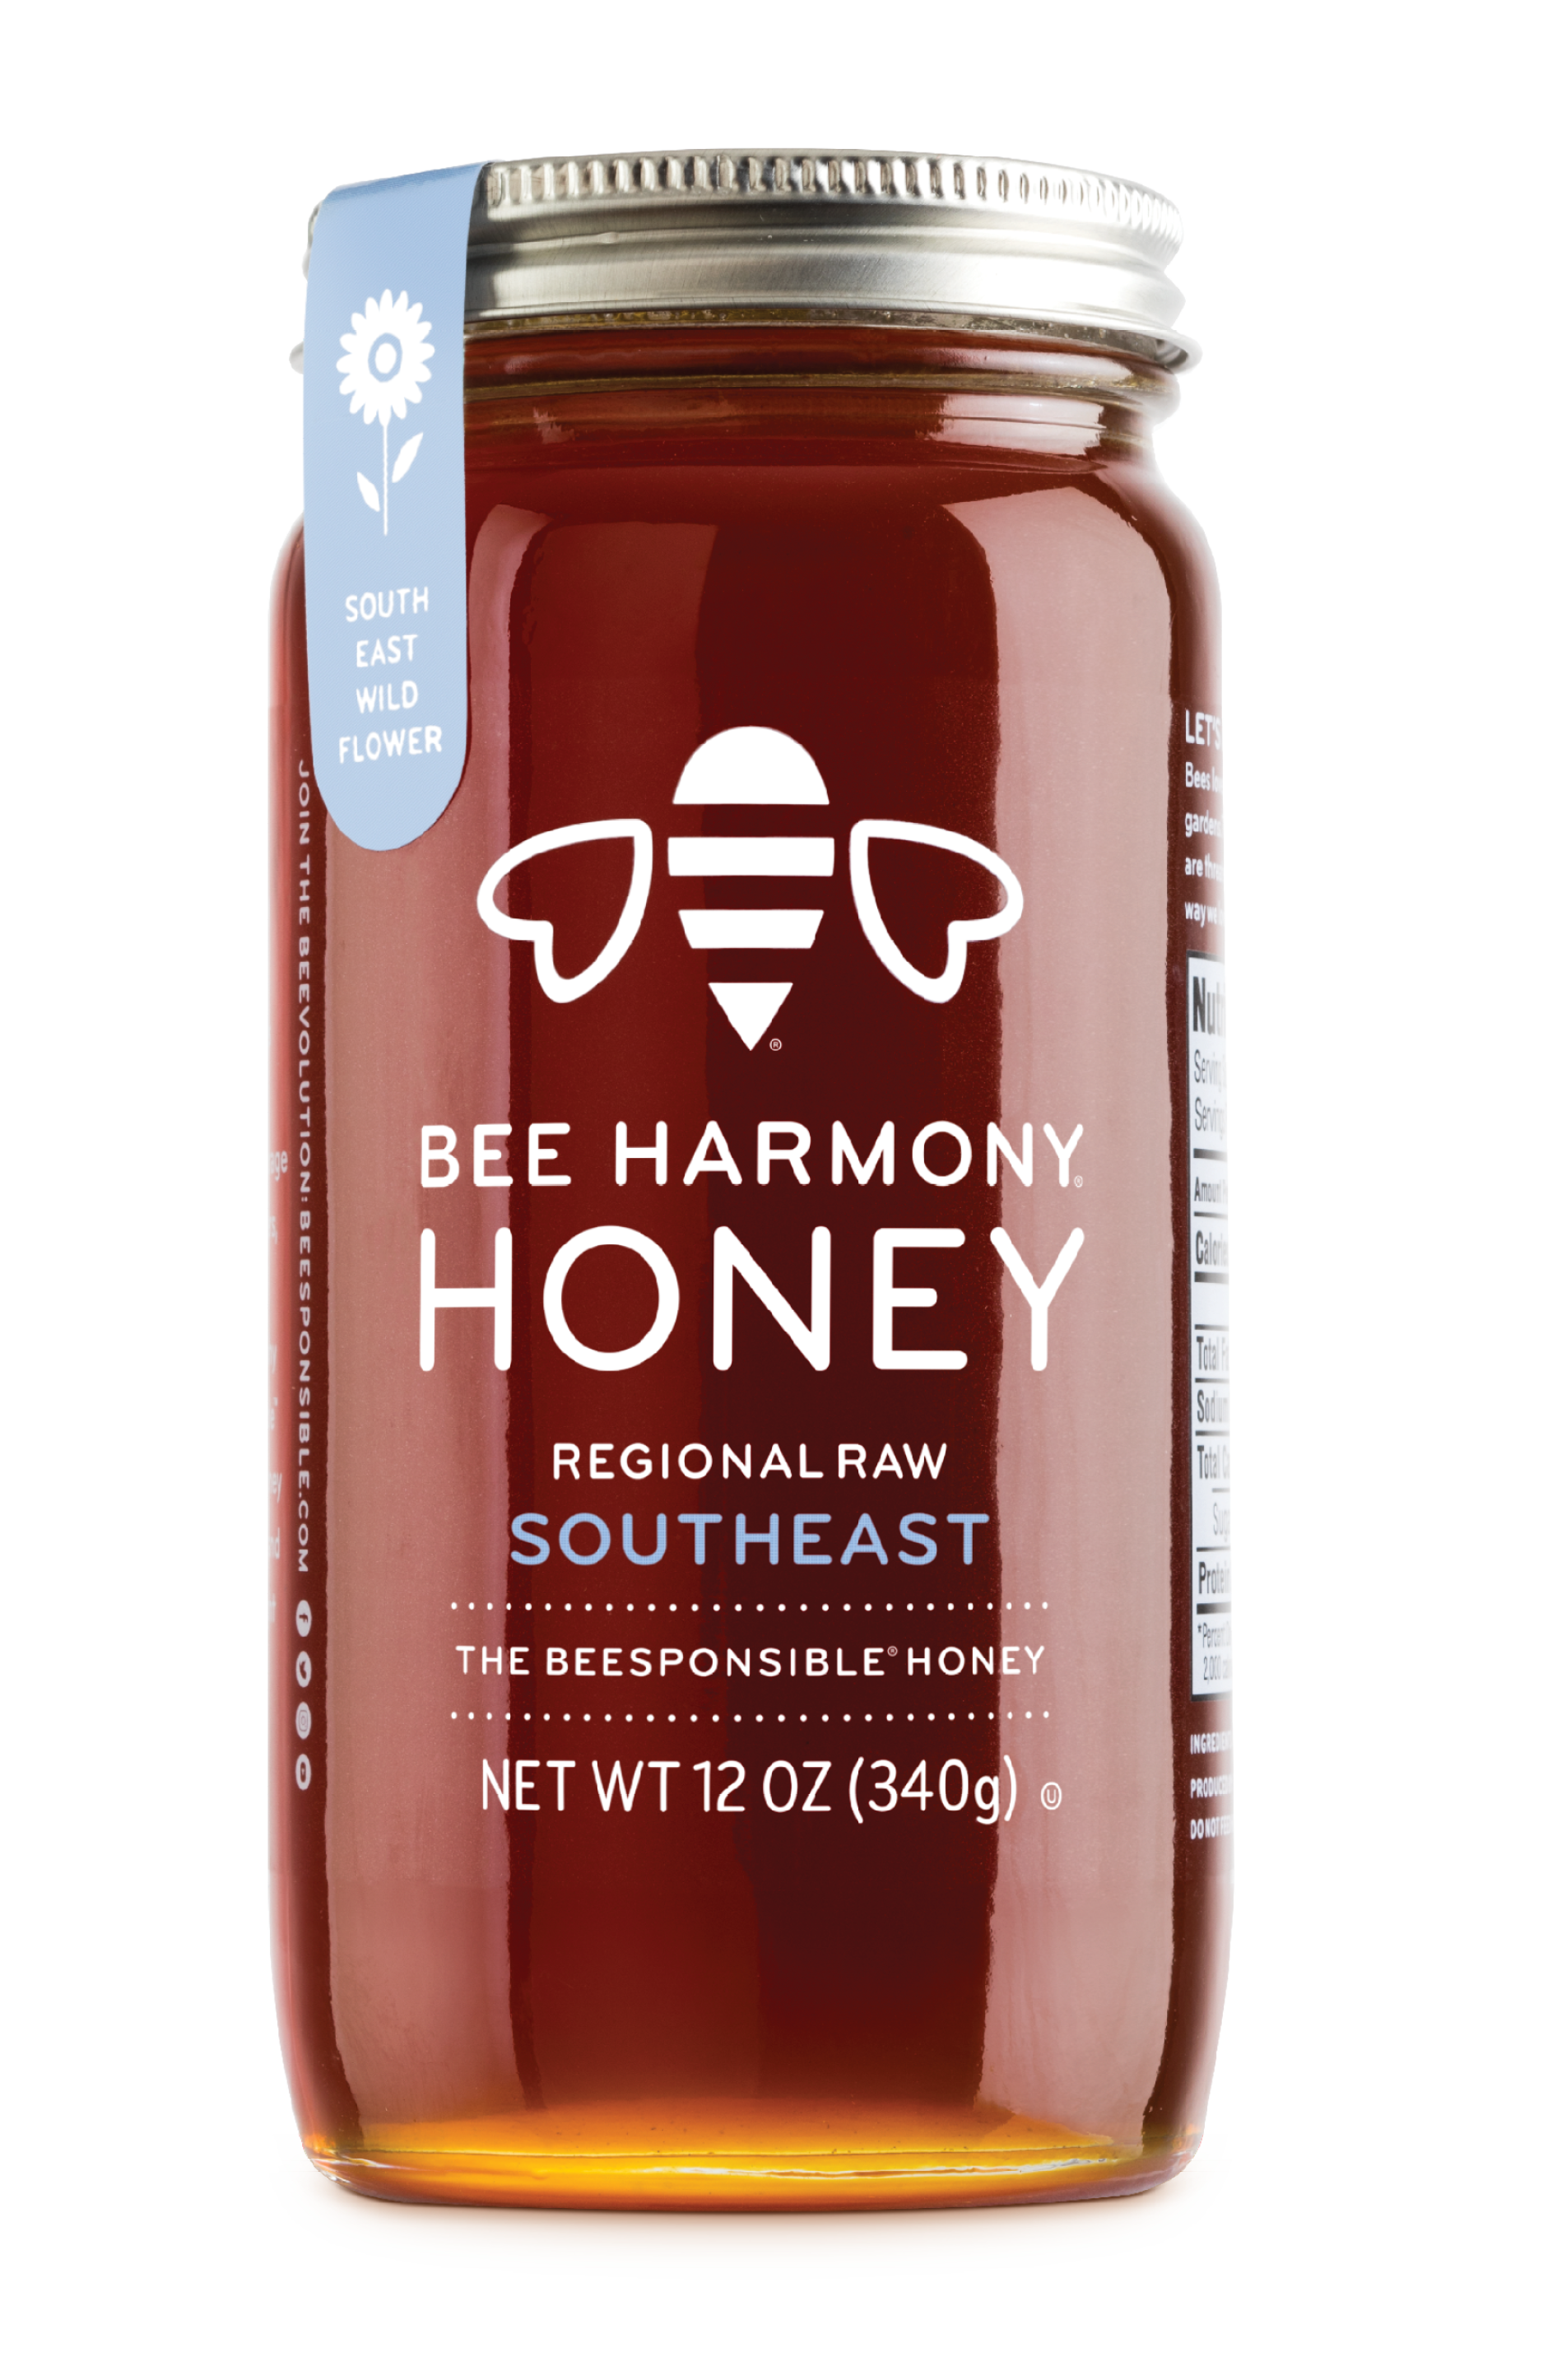 Honey Bottle Free Transparent Image HQ PNG Image